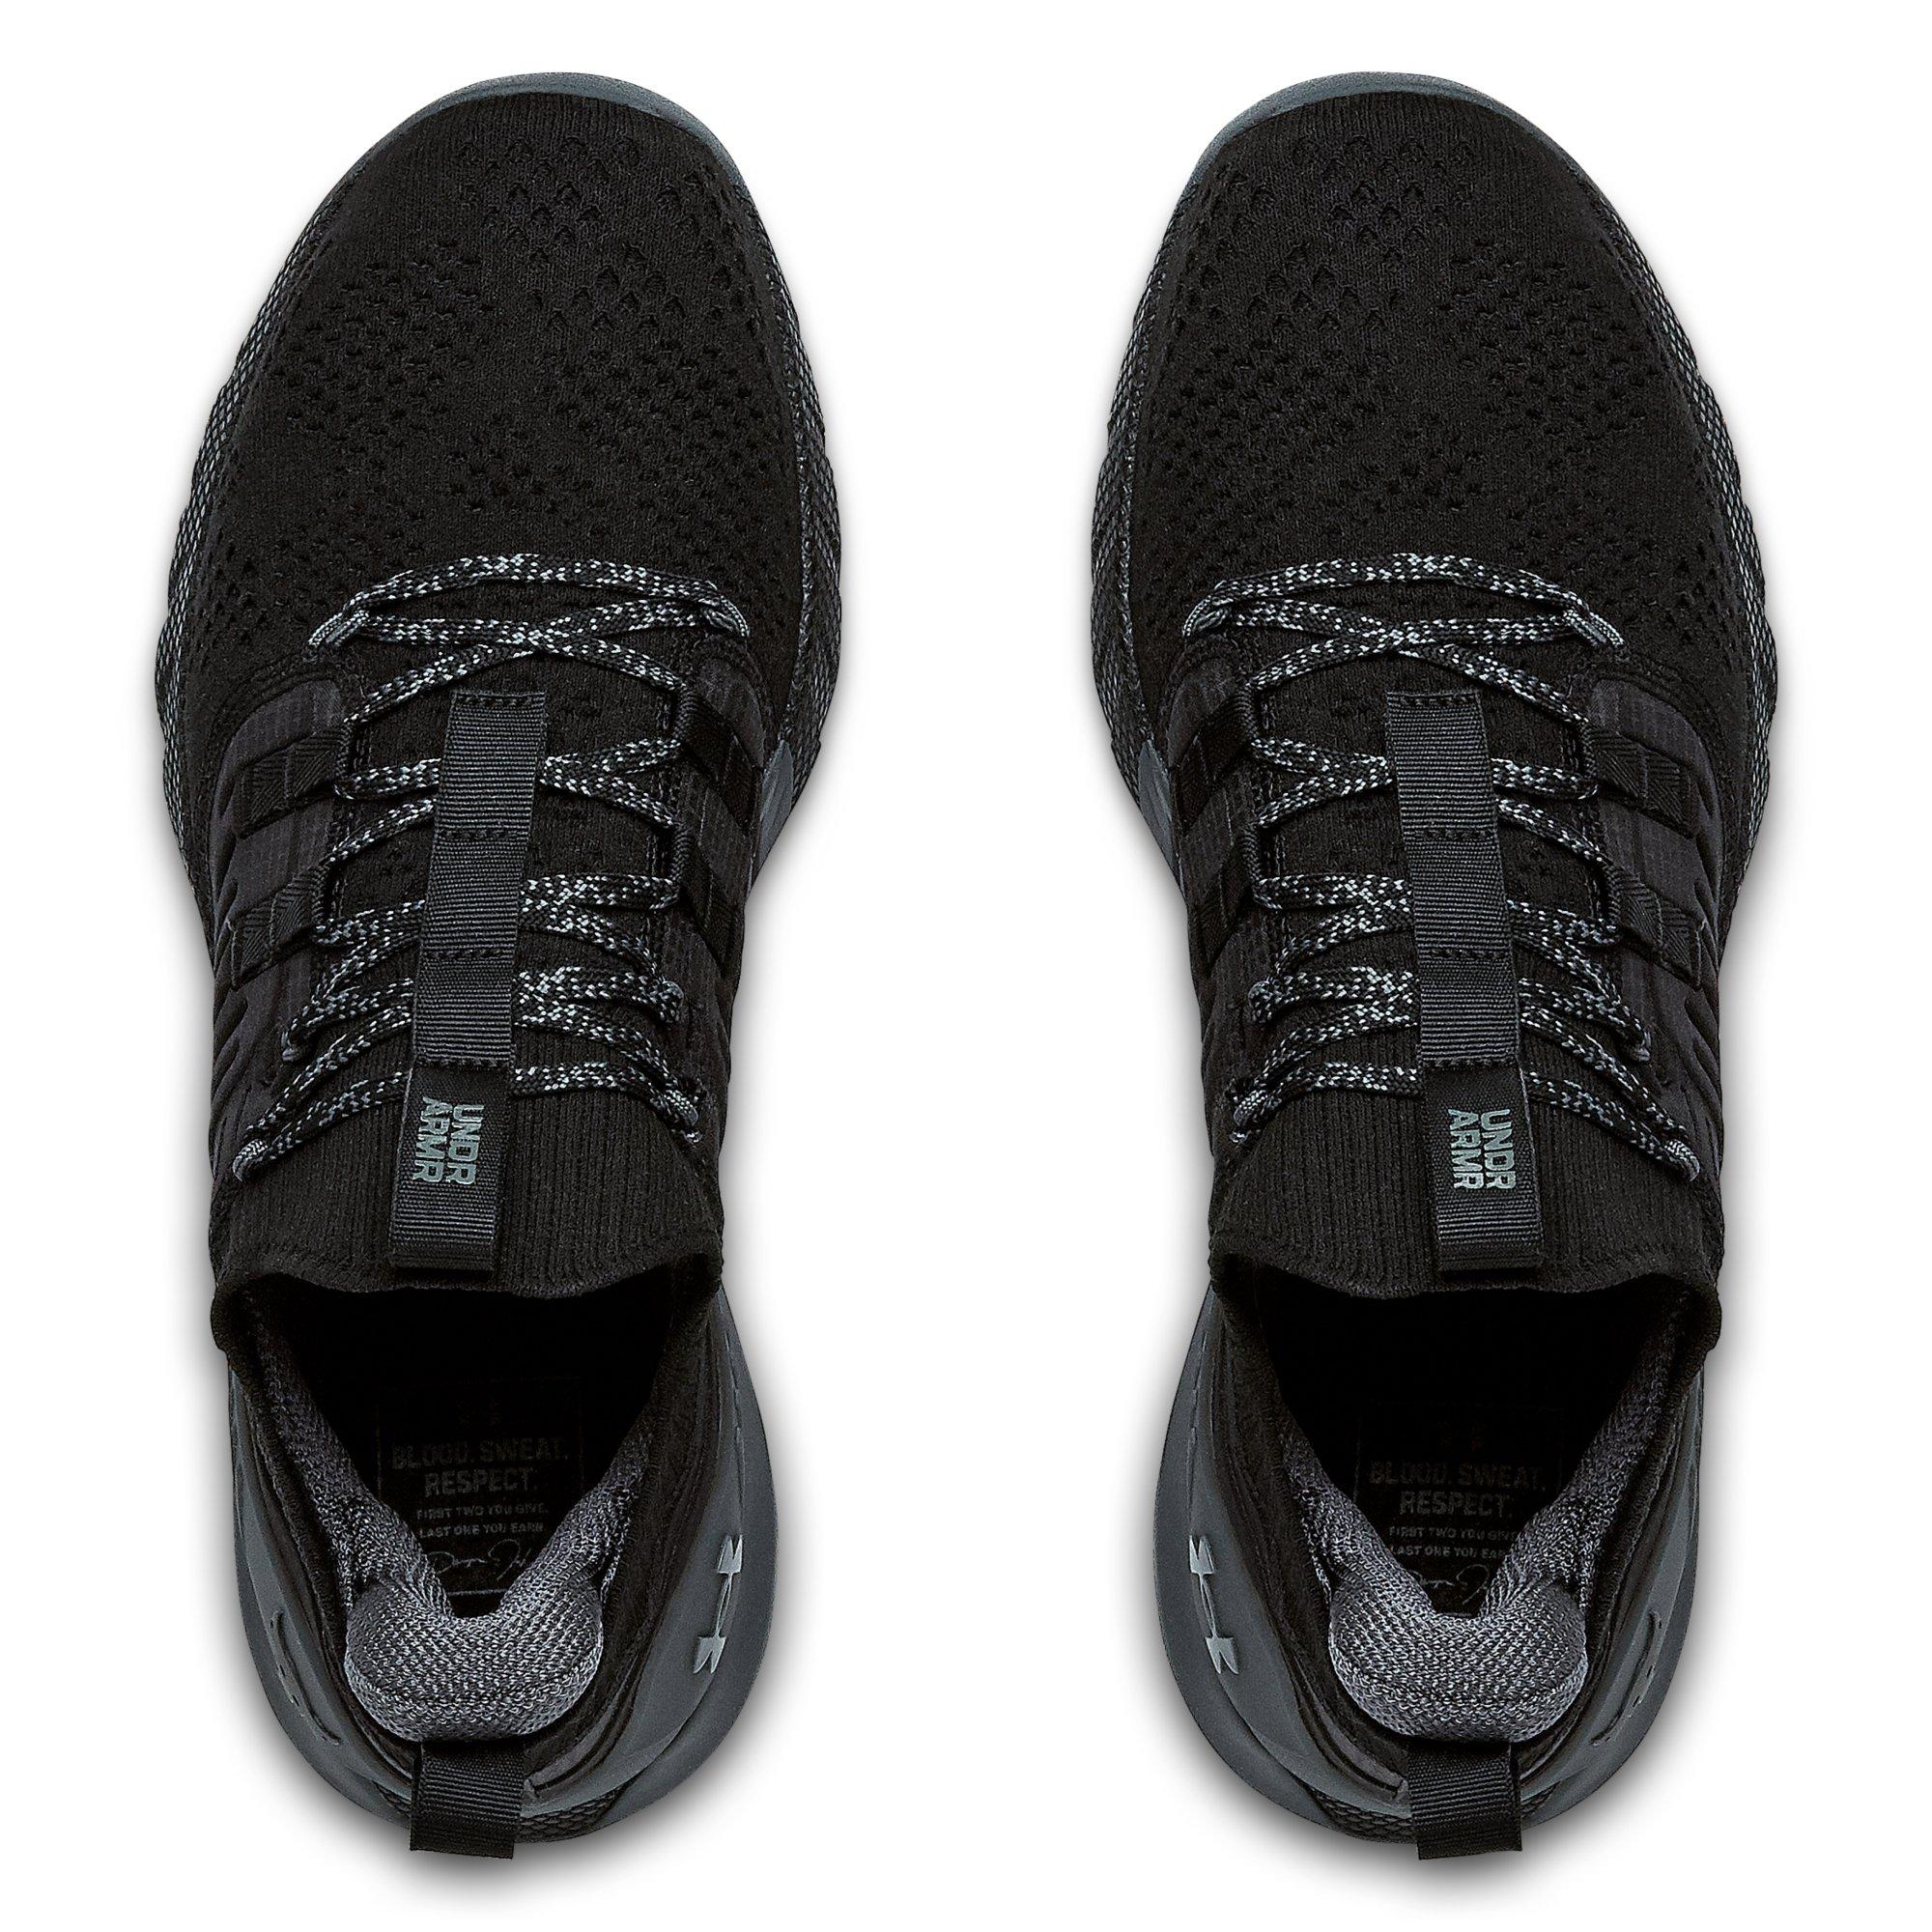 Under Armour UA Project Rock 3 Athletic Gym Training Shoes Sneakers Men's  Size 9 - General Maintenance & Diagnostics Ltd